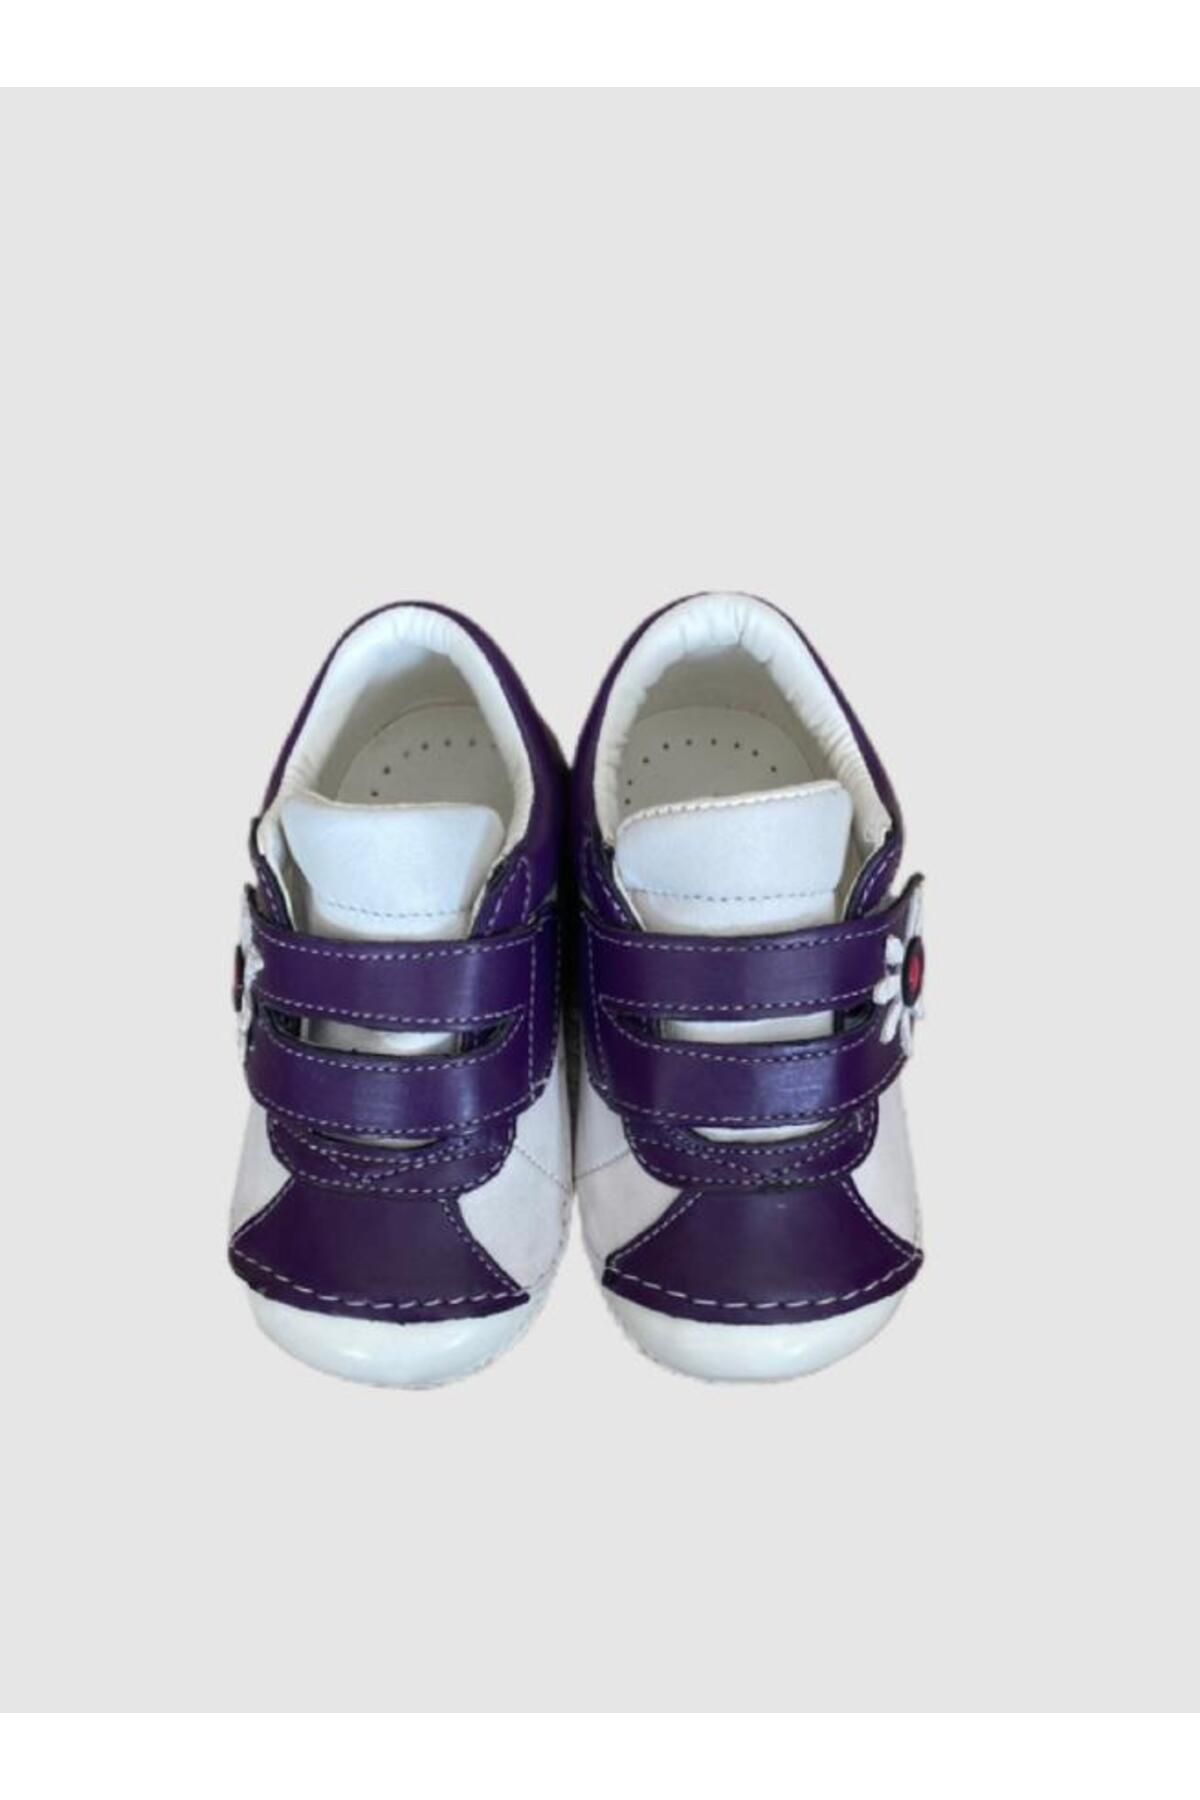 Casual unisex ilk adım bebek ayakkabı